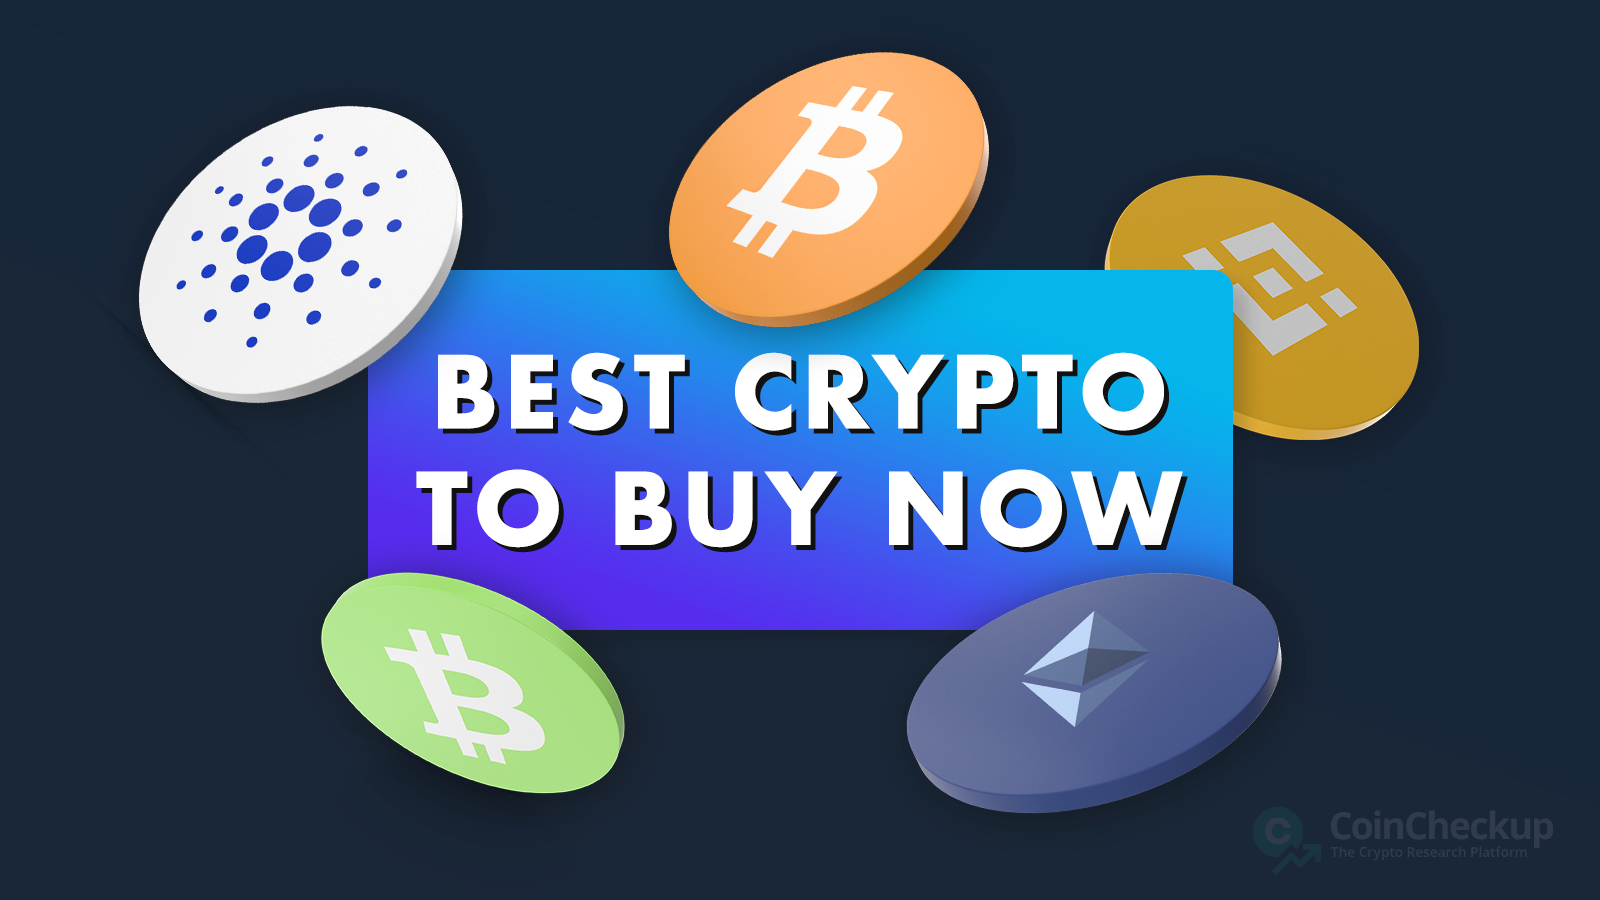 12 Beste Crypto om nu te kopen — juli 2023 - CoinCheckup Blog - Cryptocurrency-nieuws, artikelen en bronnen